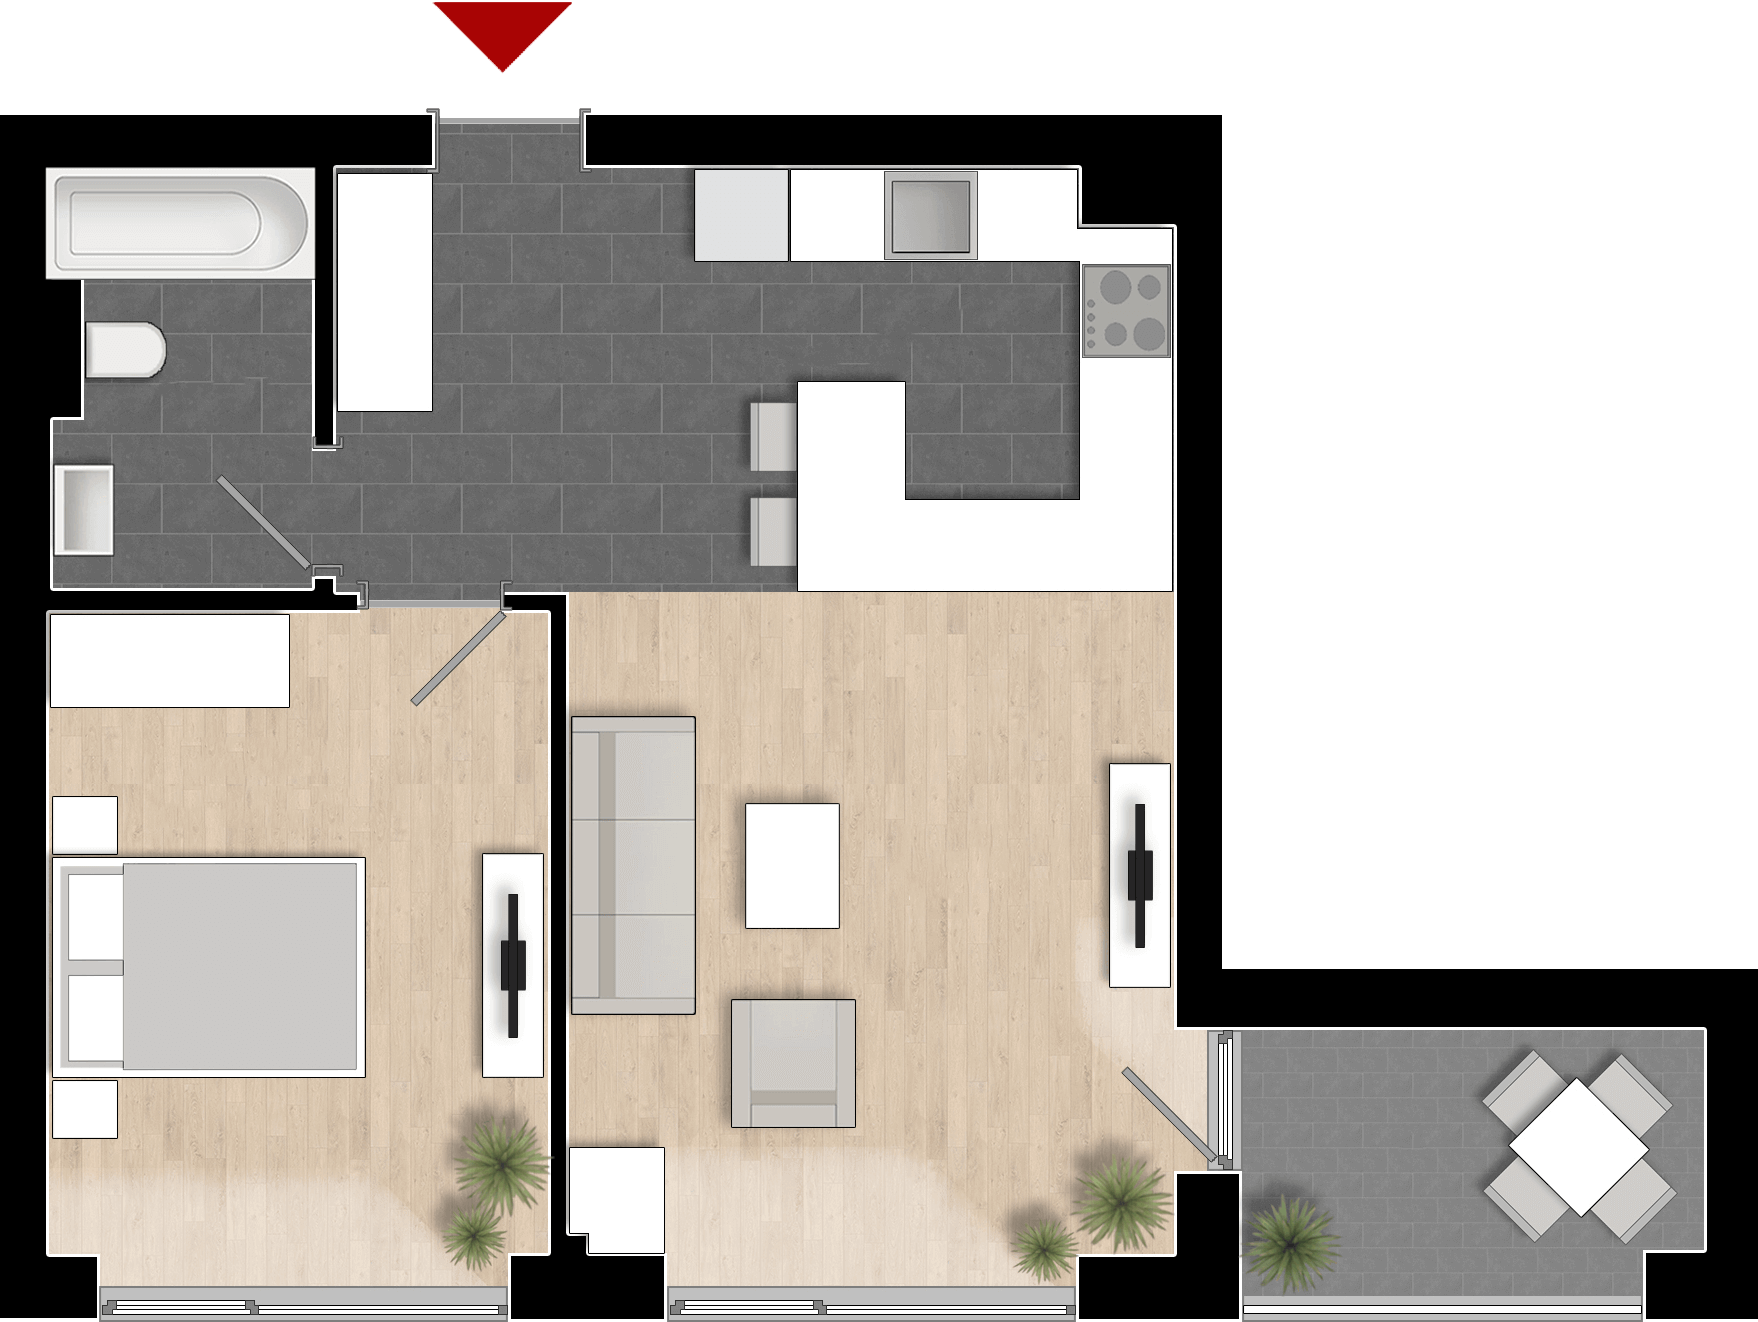  Apartament 801, Tip de apartament 1A cu 2 camere 